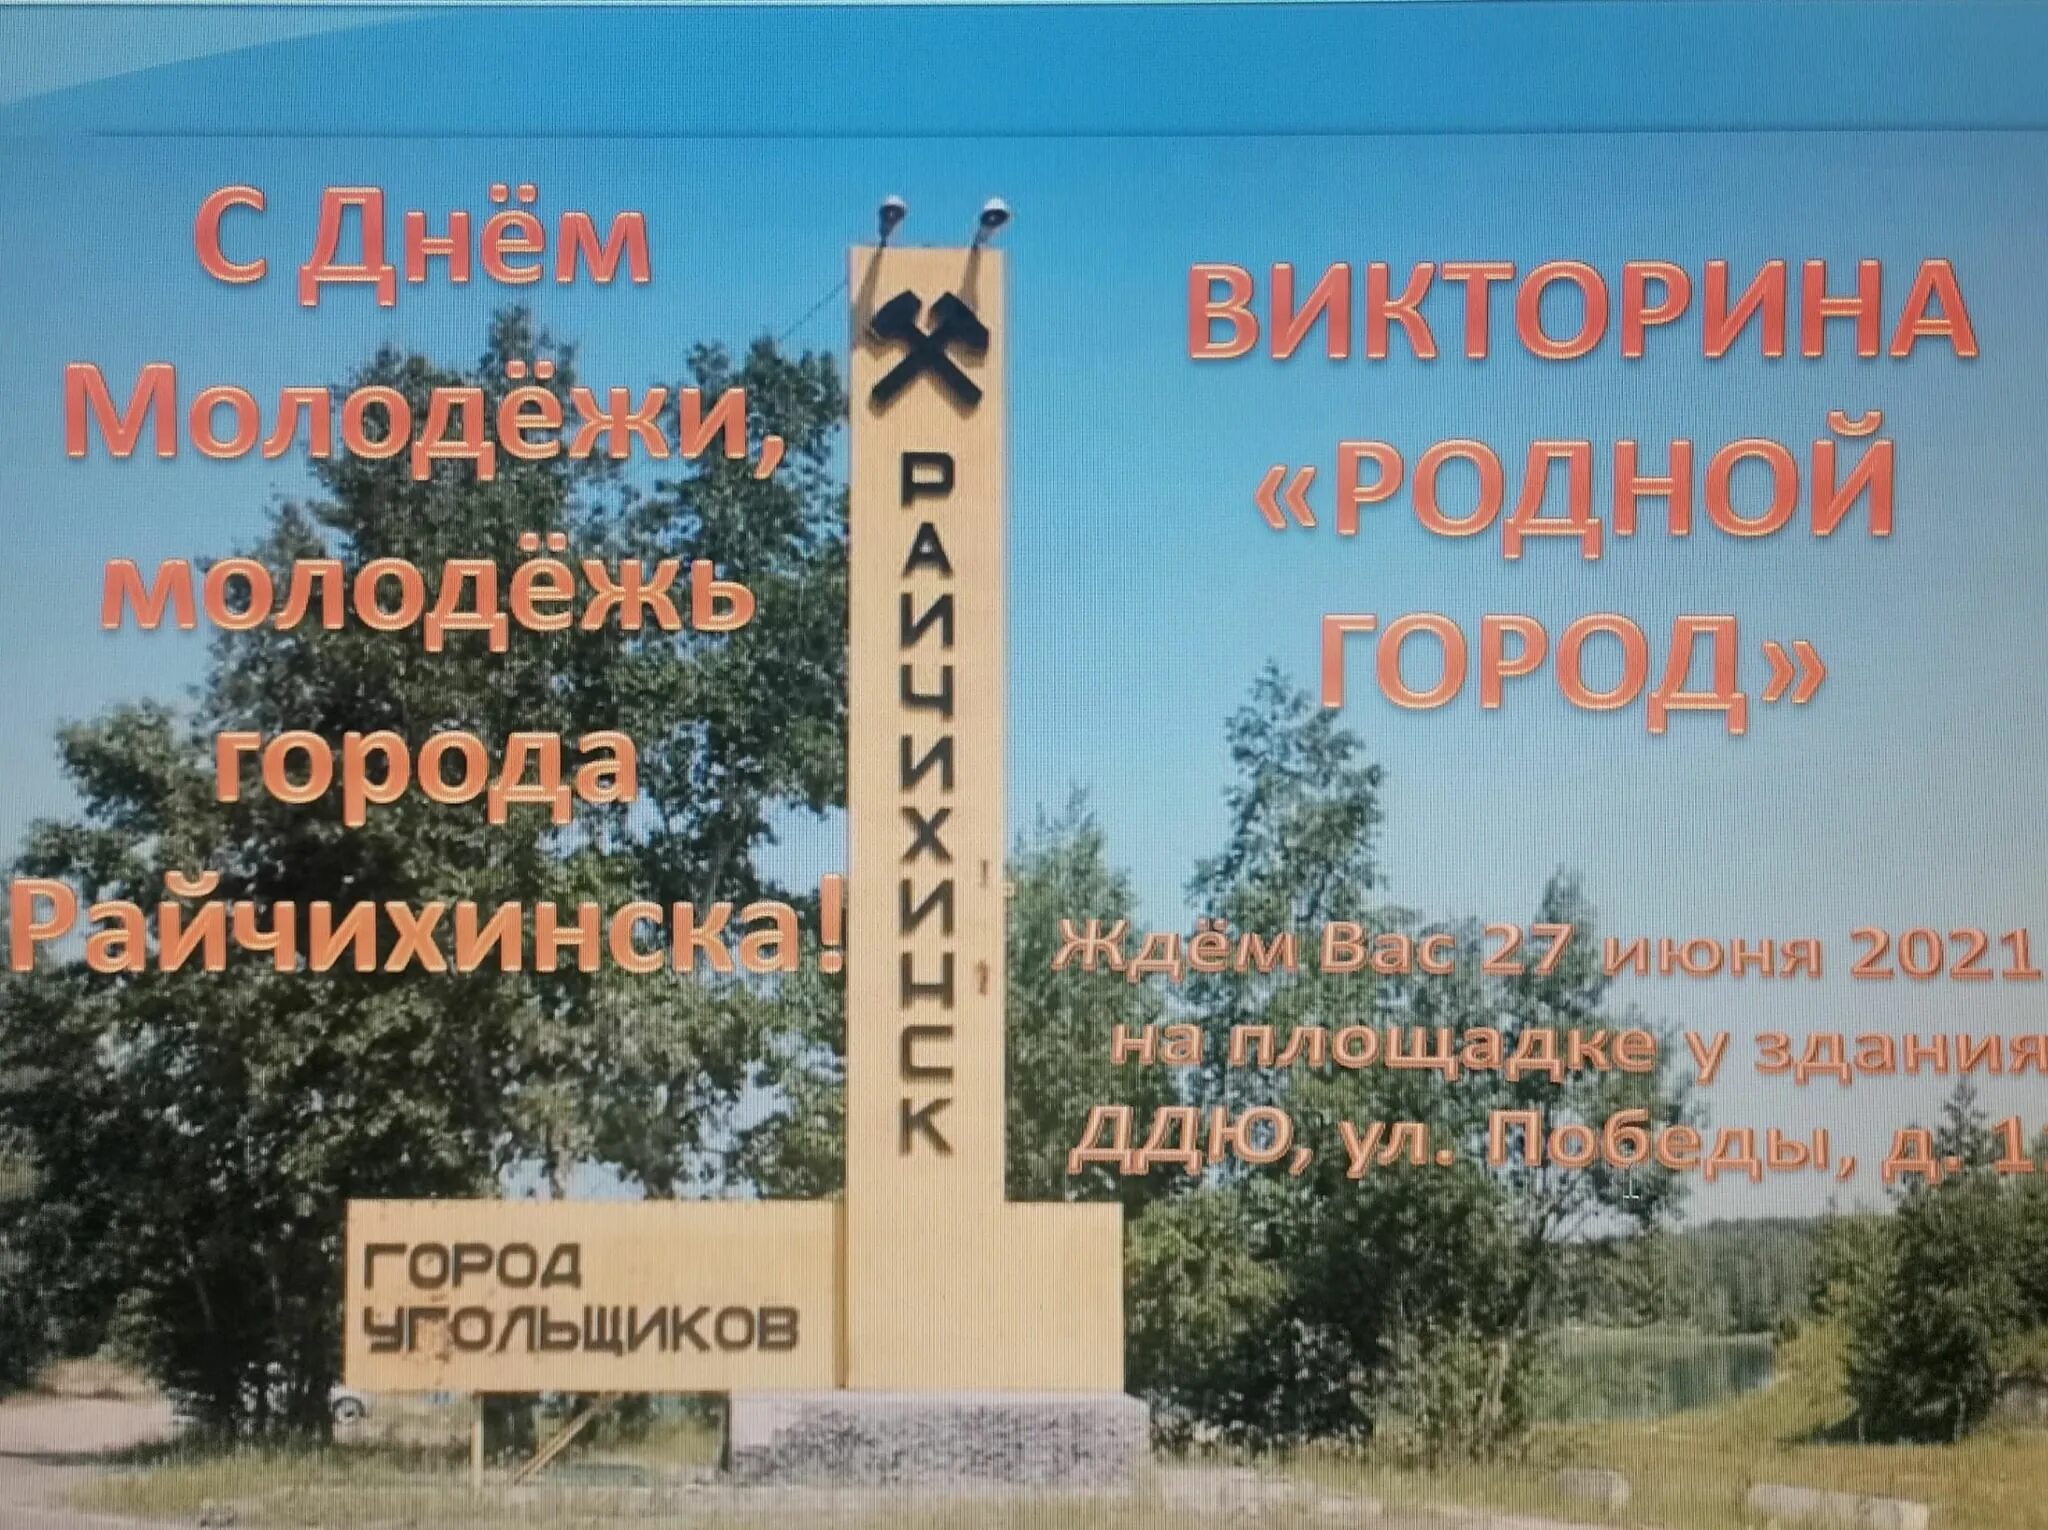 29 июня 2021 г. Райчихинск достопримечательности. Герб Райчихинска. Проект родной город Райчихинск.